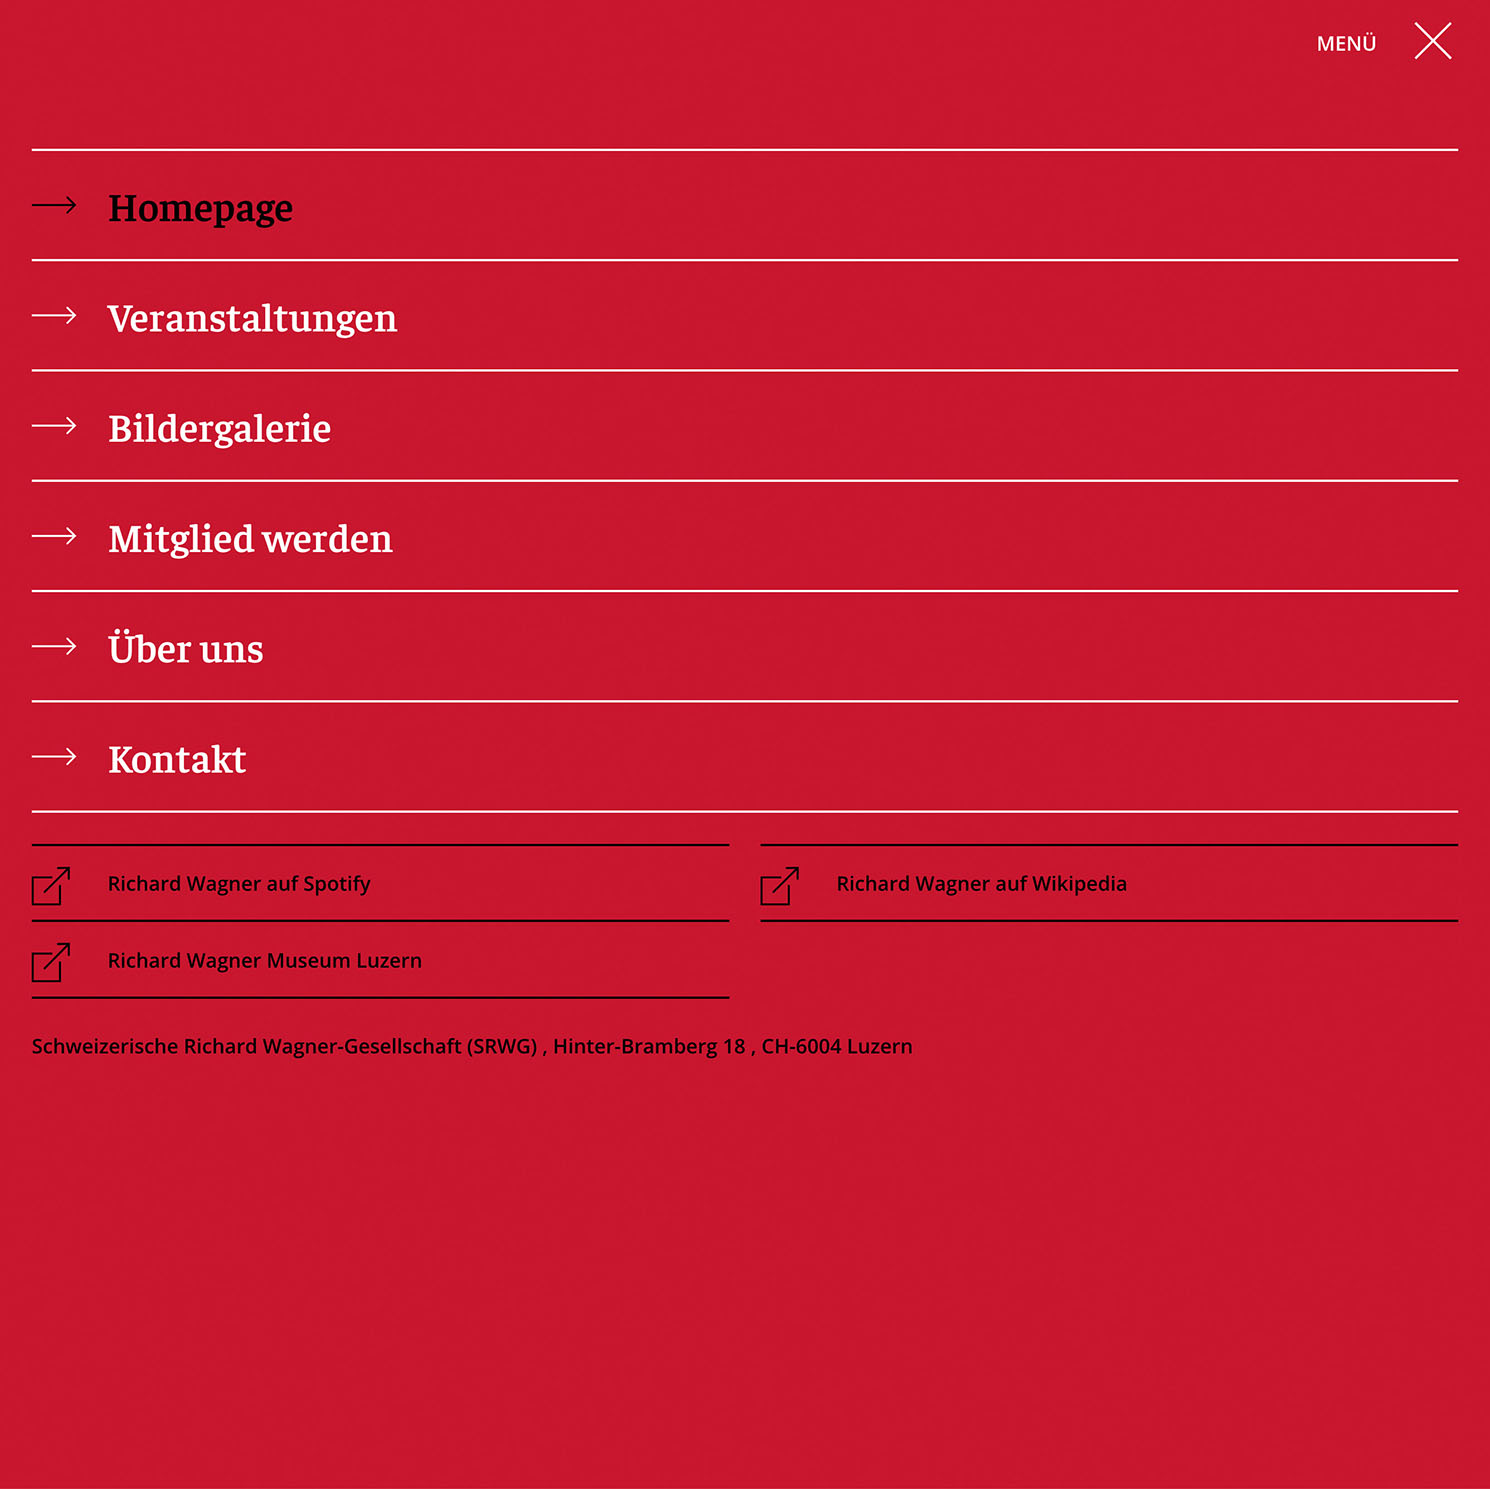 Schweizerische Richard Wagner-Gesellschaft (SRWG) Website Navigation